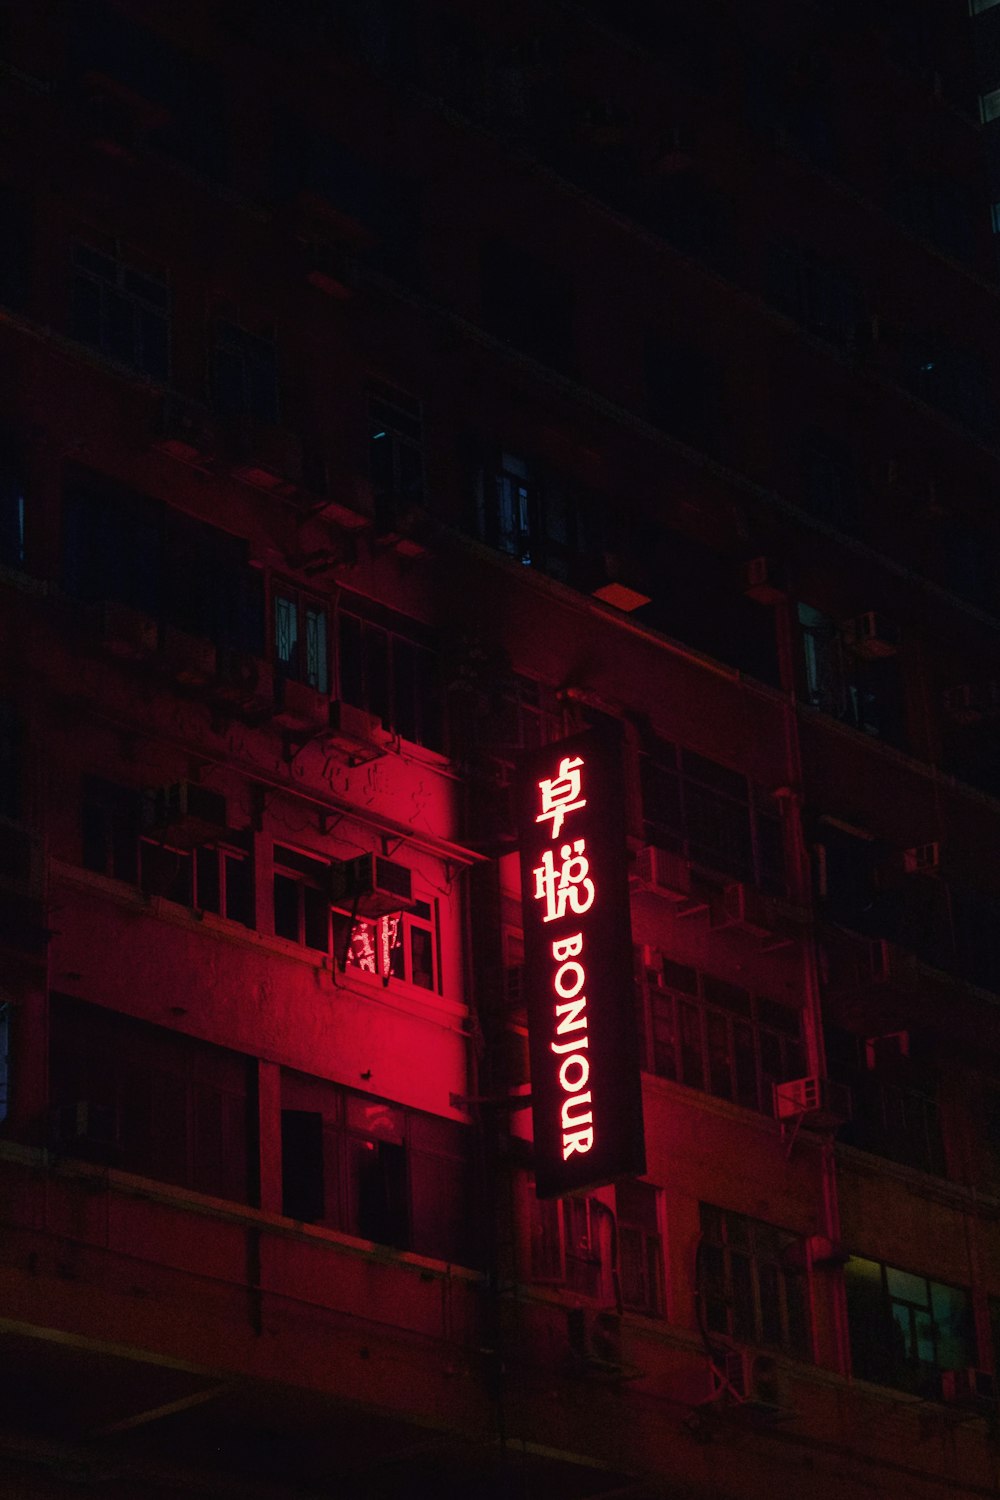 Bonjour LED sign near buildings